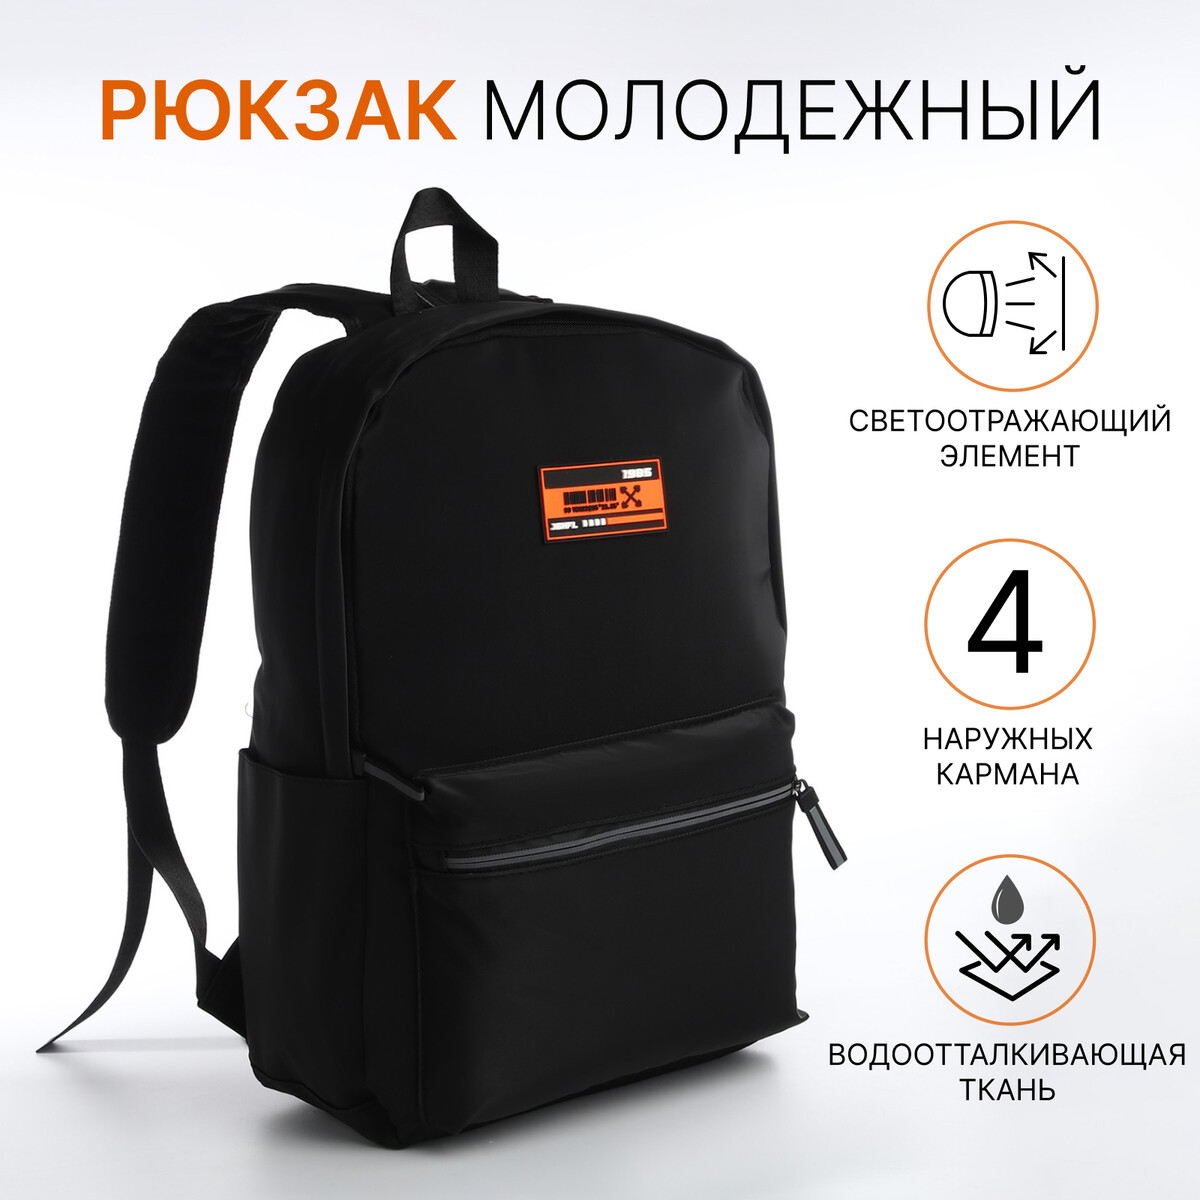 Рюкзак молодежный из текстиля на молнии, 4 кармана, цвет черный/оранжевый рюкзак школьный из текстиля на молнии 4 кармана кошелек серый оранжевый